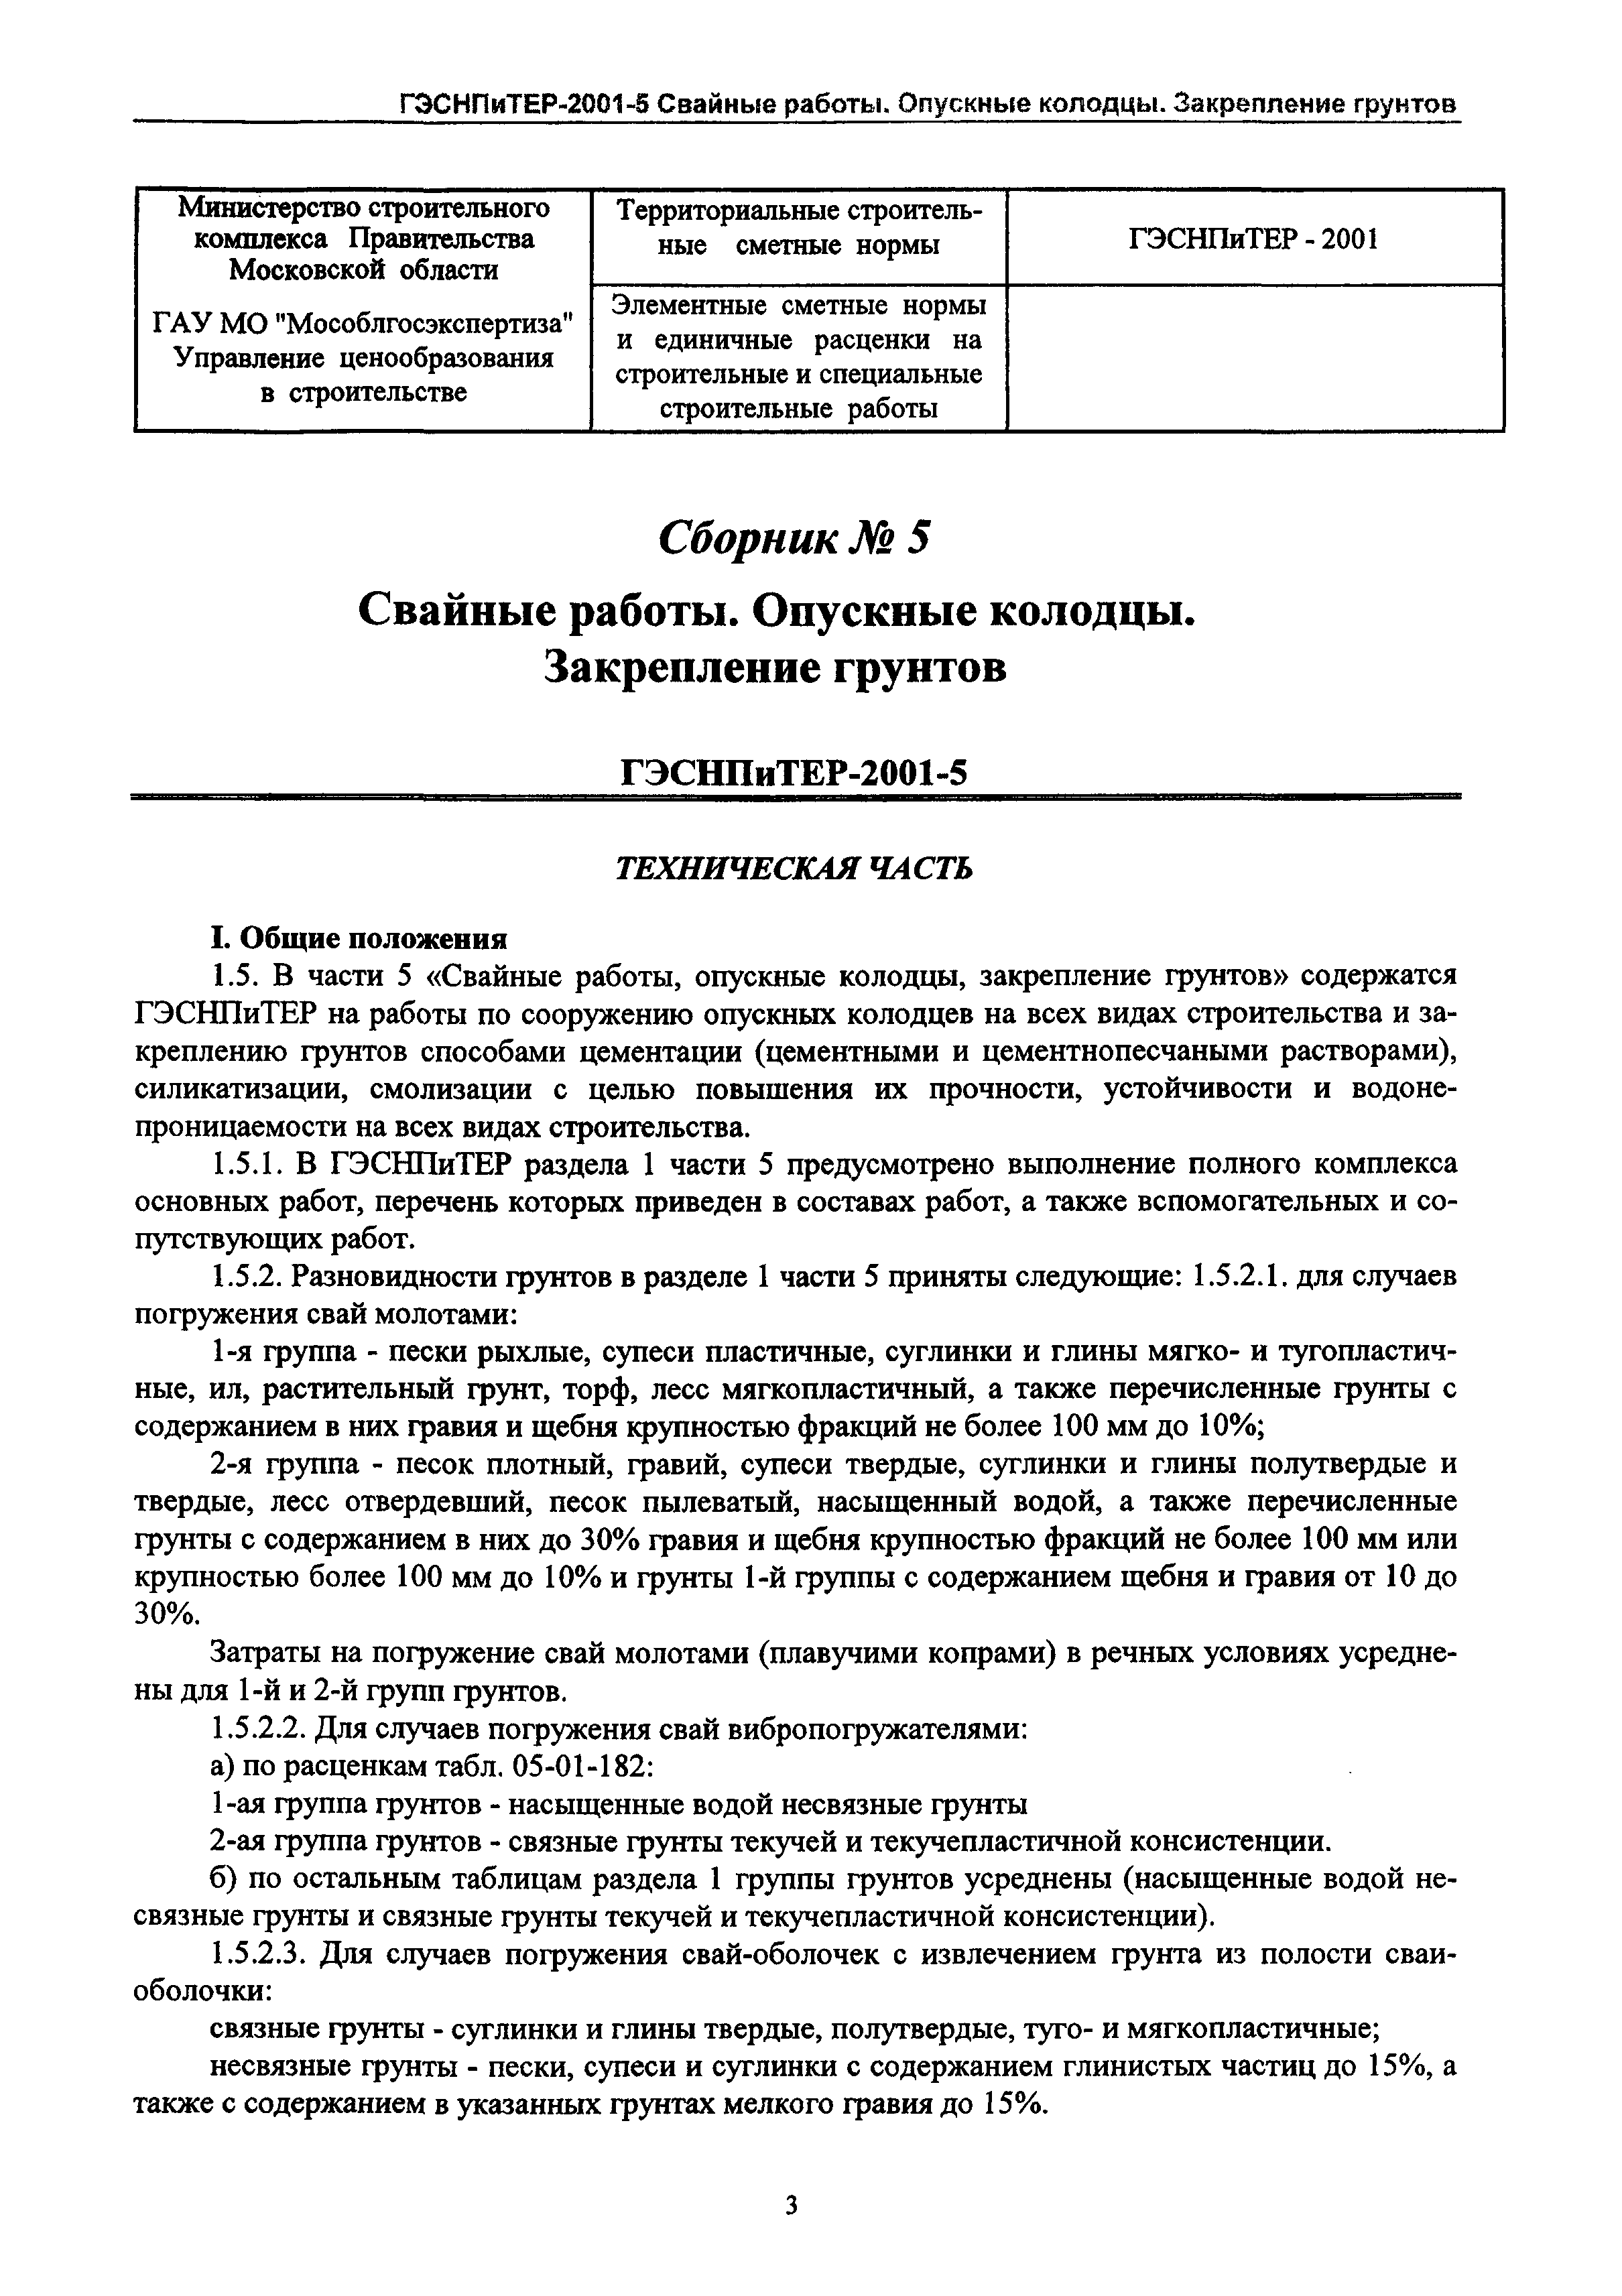 ГЭСНПиТЕР 2001-5 Московской области